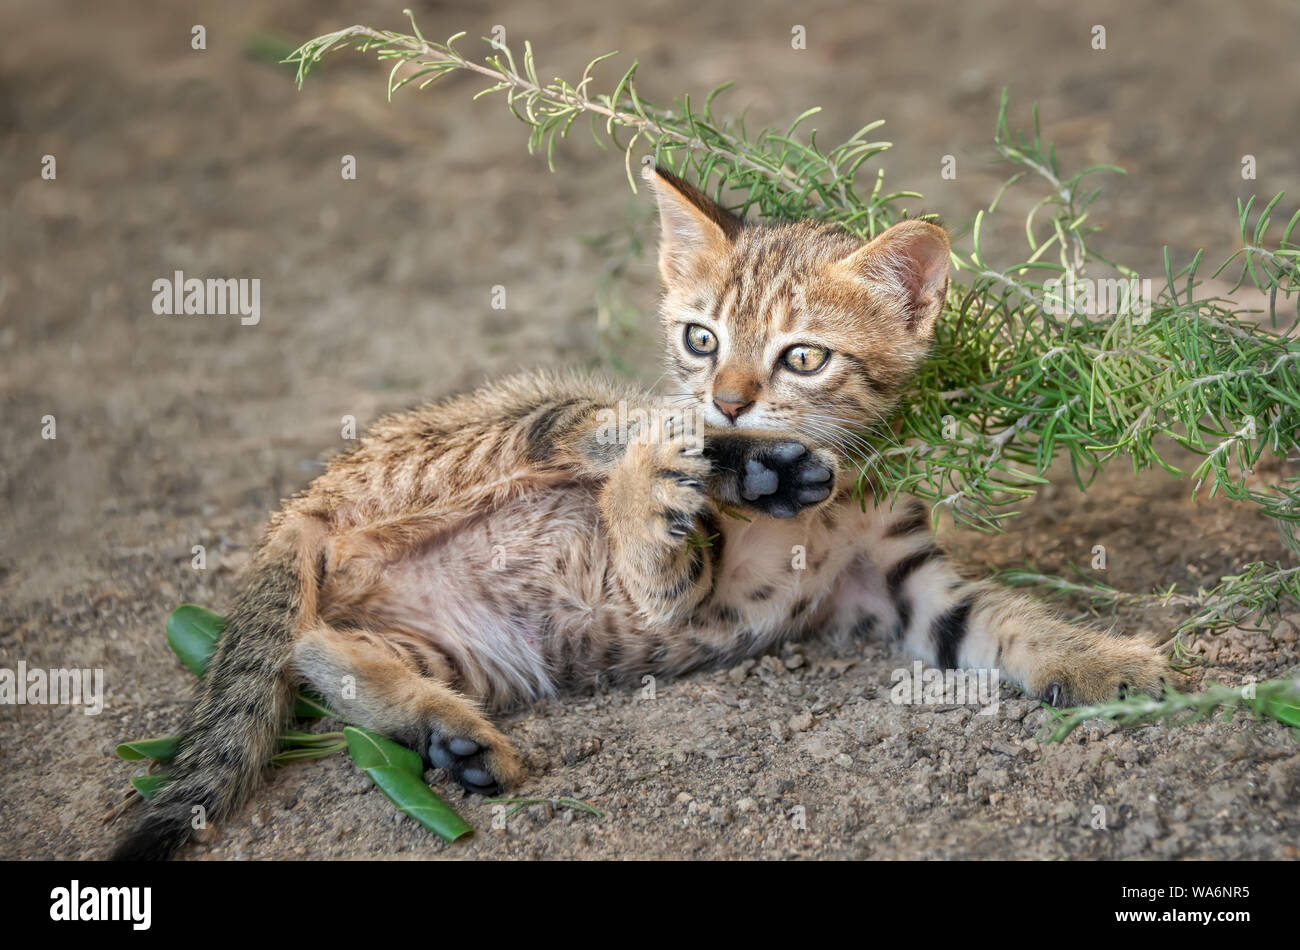 Carino brown tabby gattino gioca con la sua gamba e rotolare sulla sua schiena, espone la sua pancia e guardando curiosamente, Cicladi, isola Egea, Grecia Foto Stock